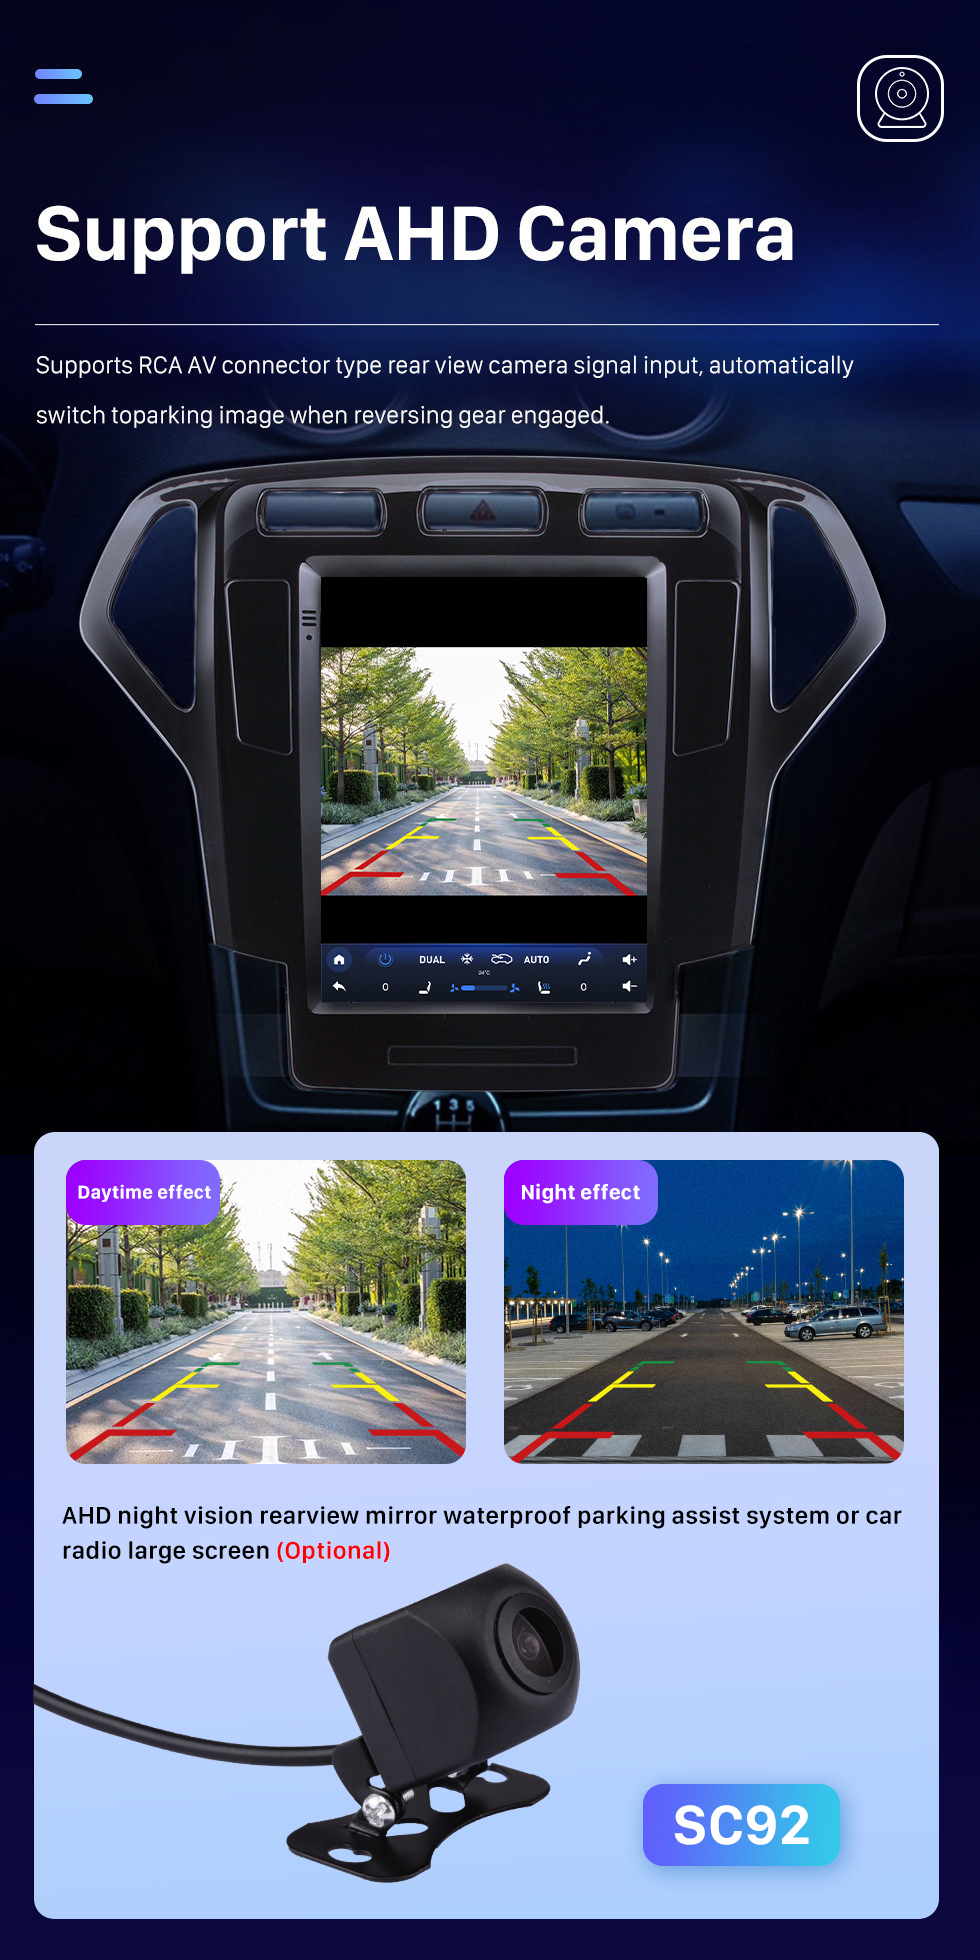 Seicane 9,7-дюймовый сенсорный экран HD для 2007-2010 Ford Mondeo mk4 GPS Navi Android Автомобильный GPS-навигатор Автомобильный радиоприемник Ремонт Поддержка Bluetooth